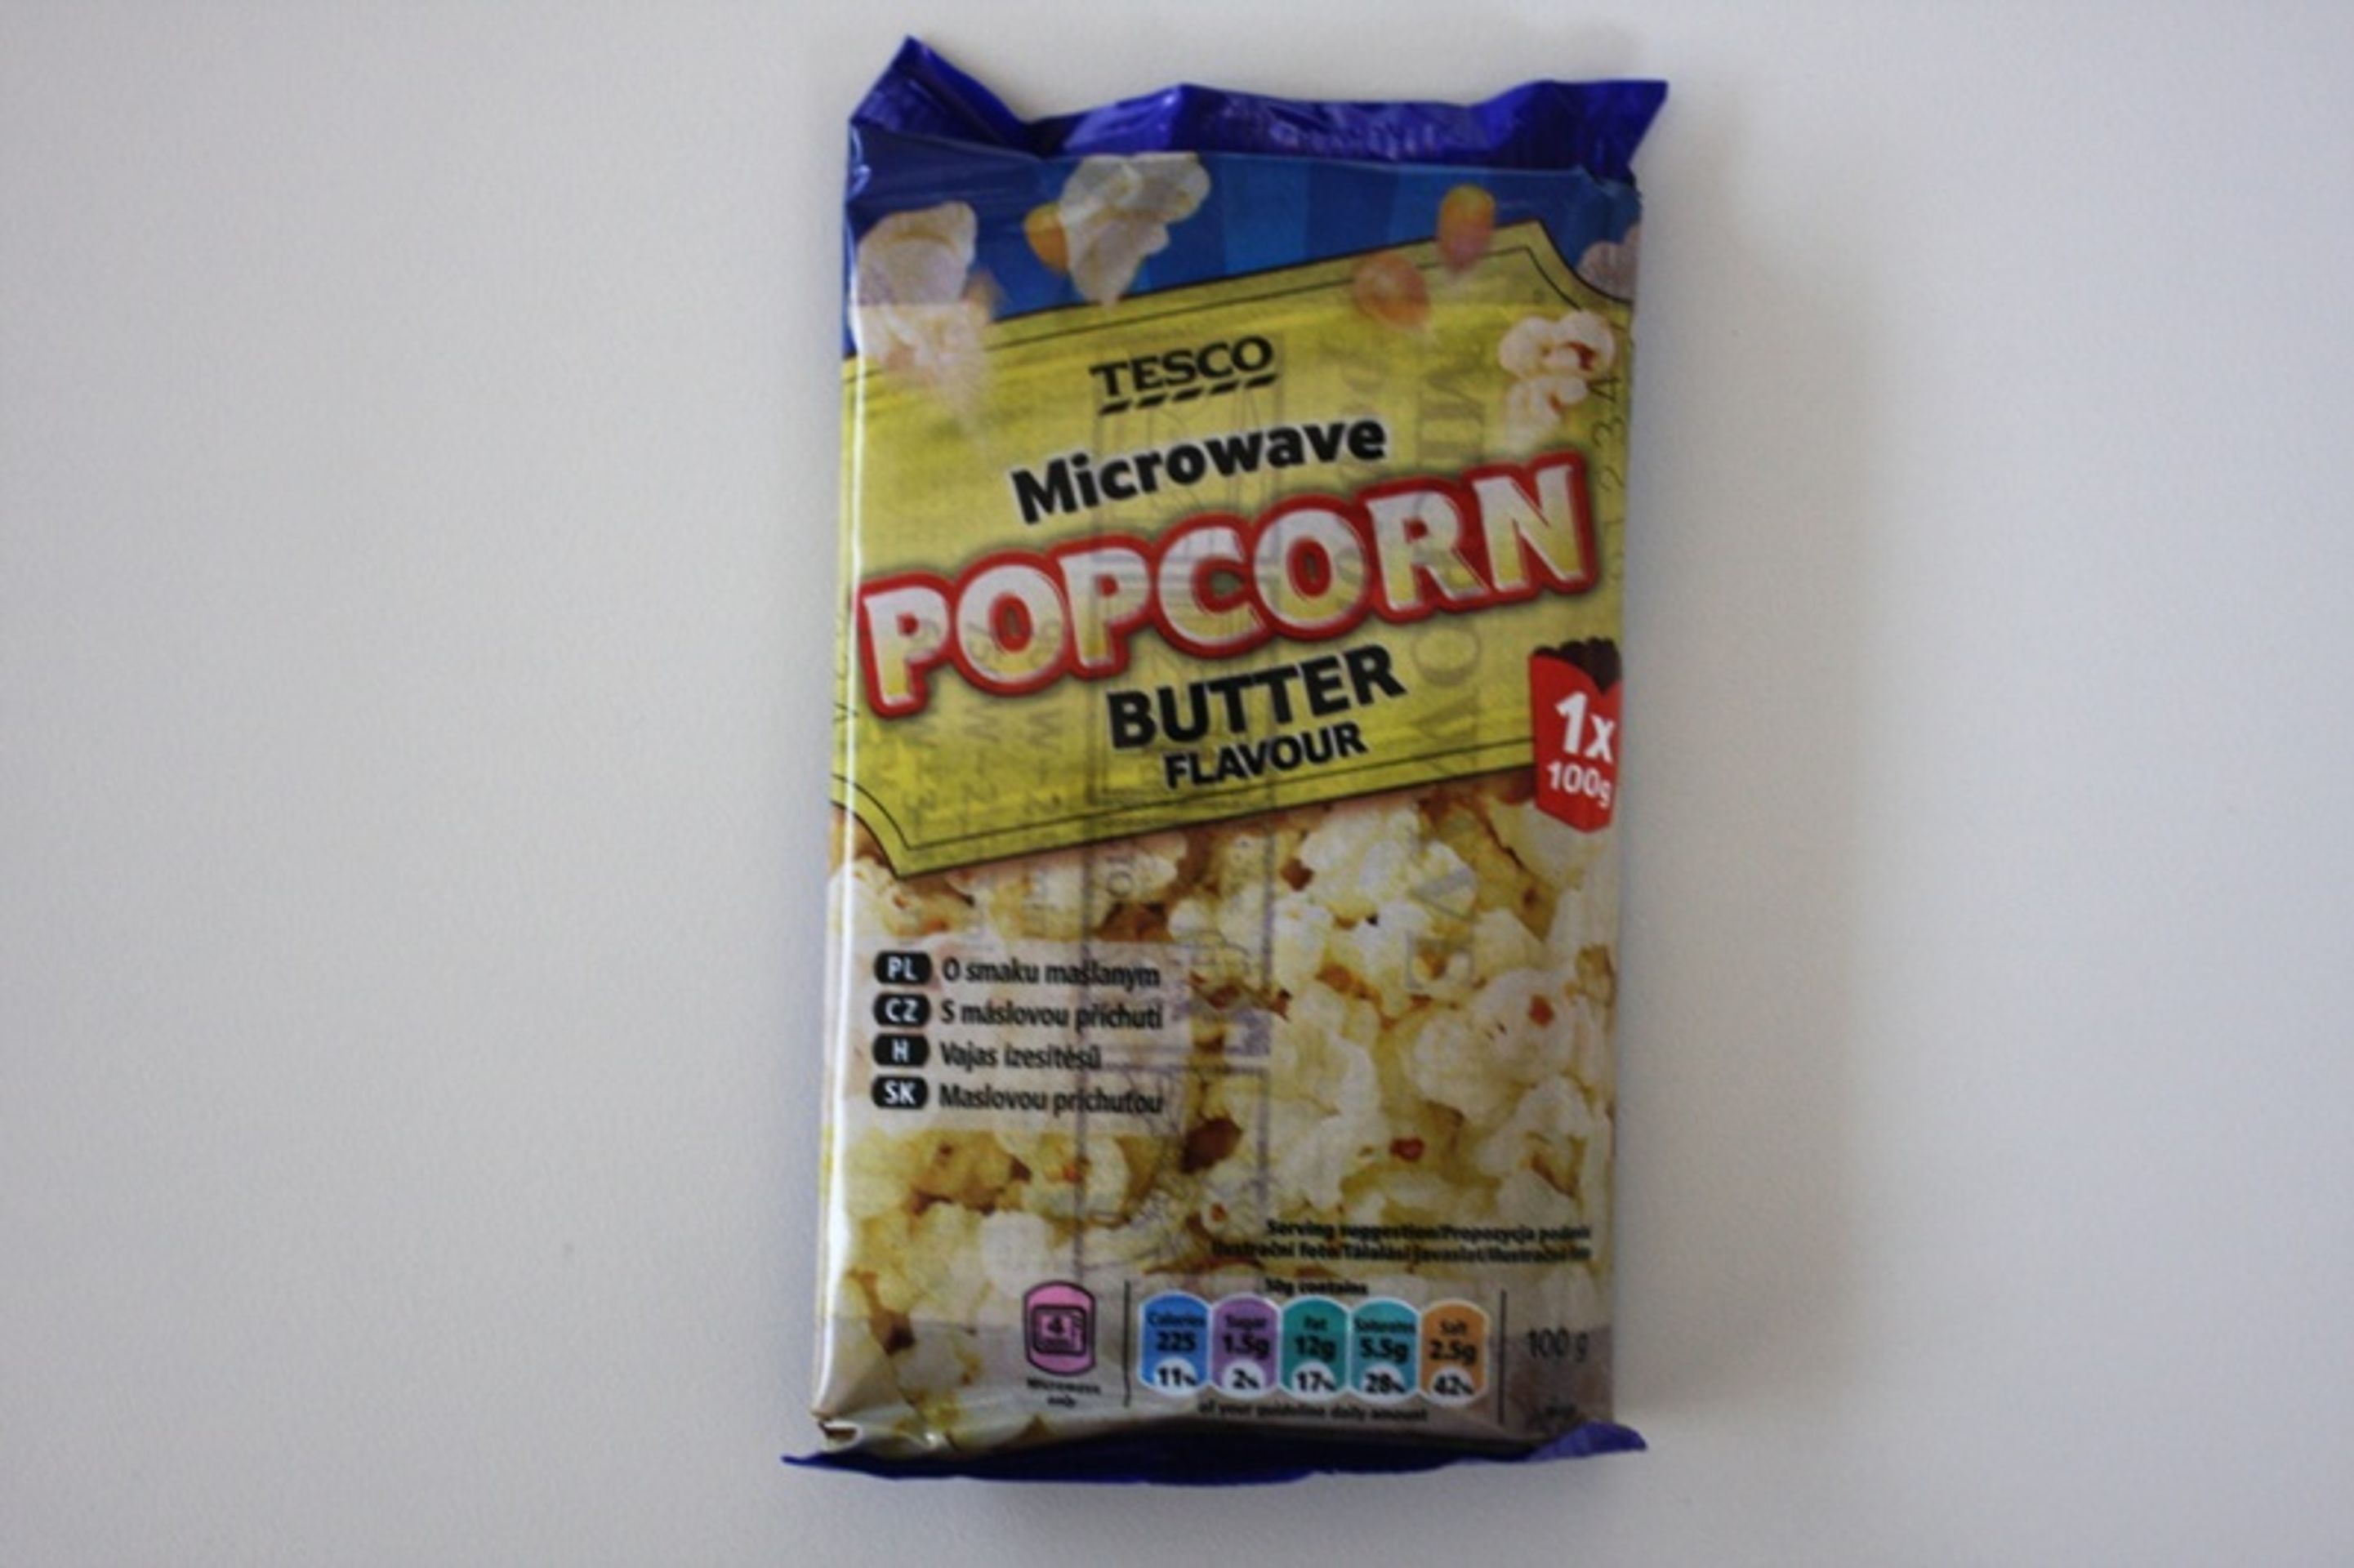 9. místo: Tesco: Microwave popcorn butter flavour (Kukuřice s máslovou příchutí po přípravu popcornu v mikrovlnné troubě) - GALERIE: Test popcornů s máslovou příchutí (9/16)